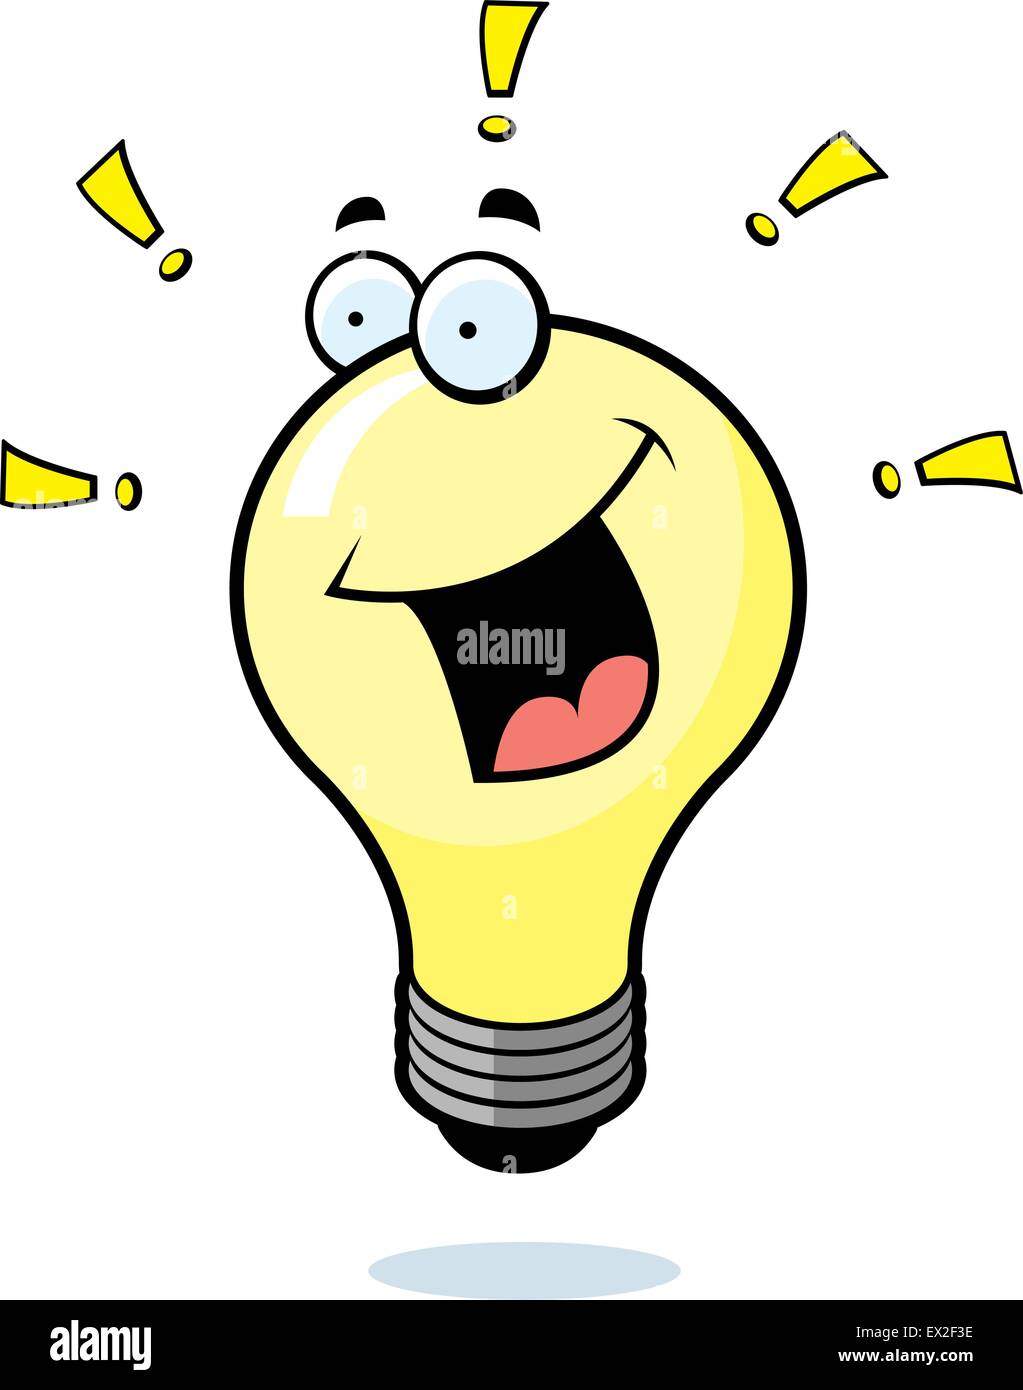 Ein Cartoon Glühbirne lächelnd und glücklich Stock-Vektorgrafik - Alamy